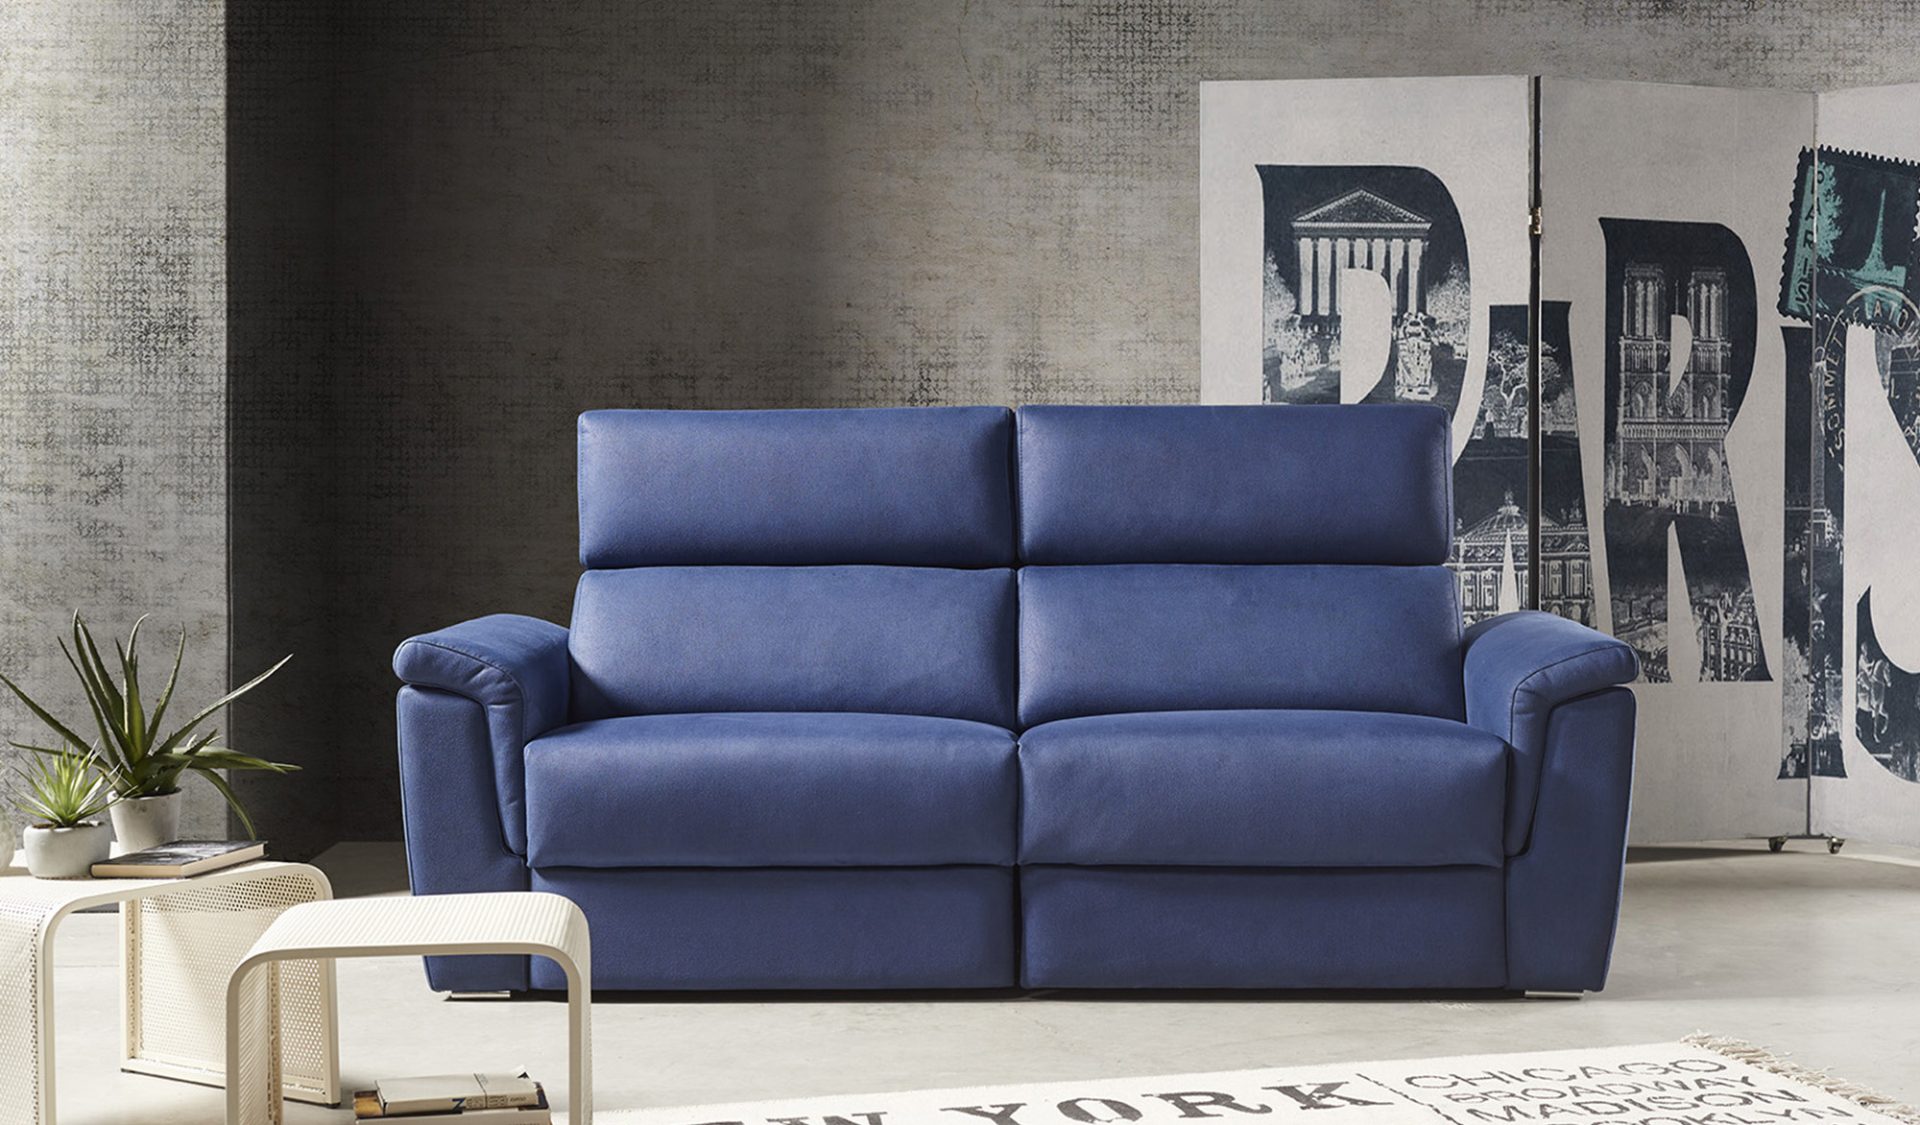 Haz de tu sala un refugio de comodidad con nuestro sillón fijo. Experimenta la relajación suprema con nuestro sofá relax. ¡Encuentra el tuyo ahora!